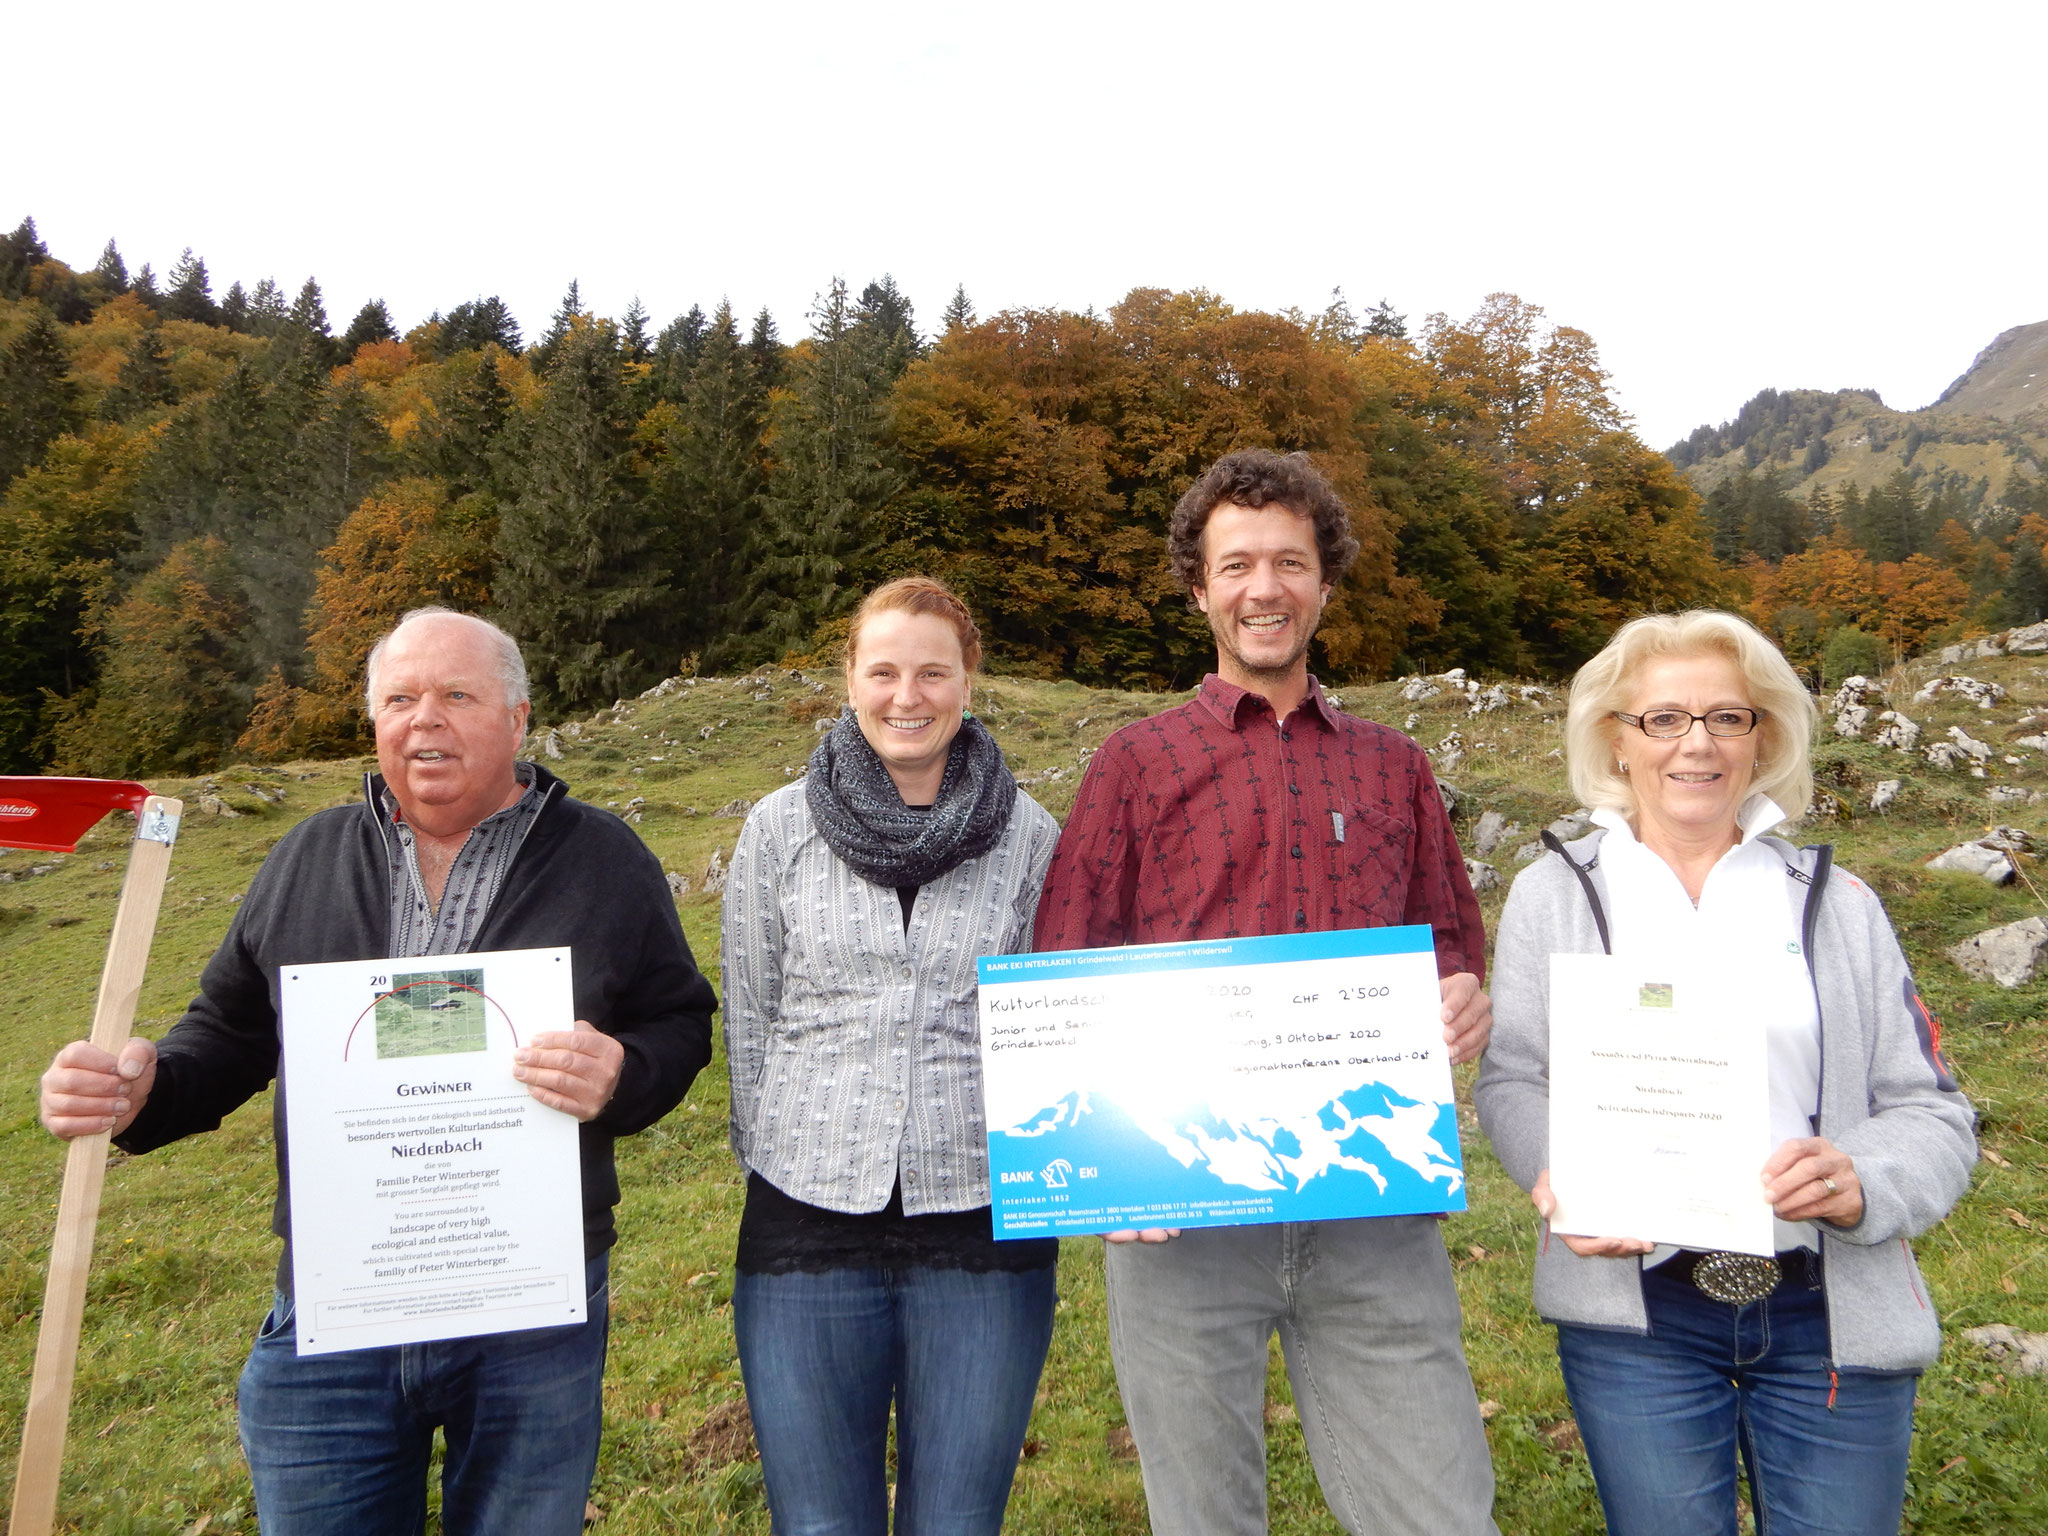 Familie Peter Winterberger erhält den Kulturlandschaftspreis 2020 für die Fläche Niederbach.